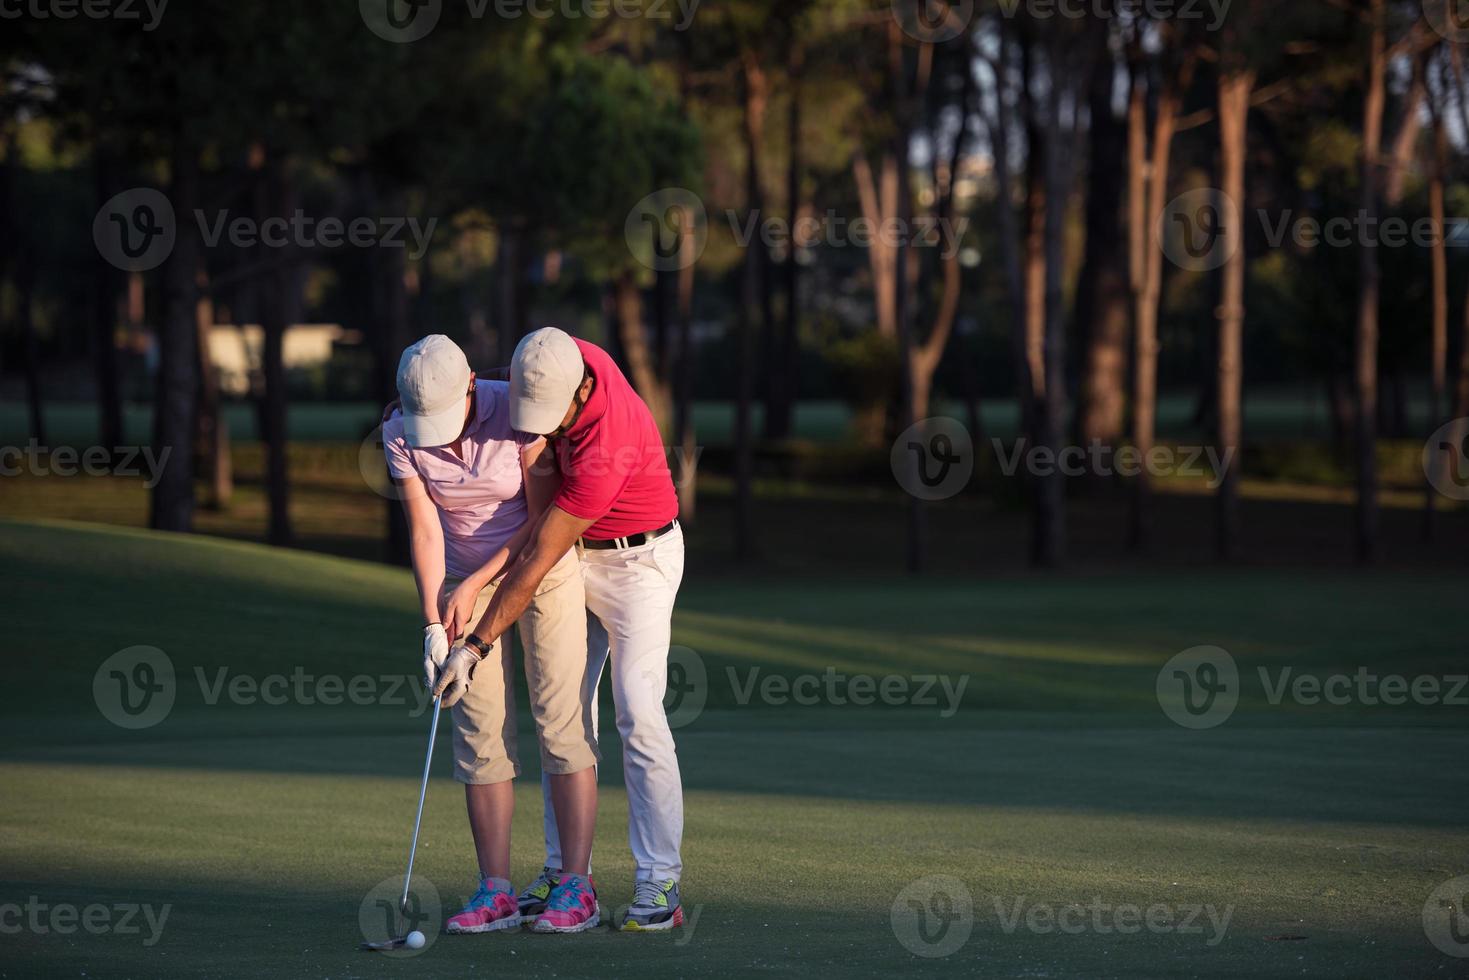 golf instruktioner se foto